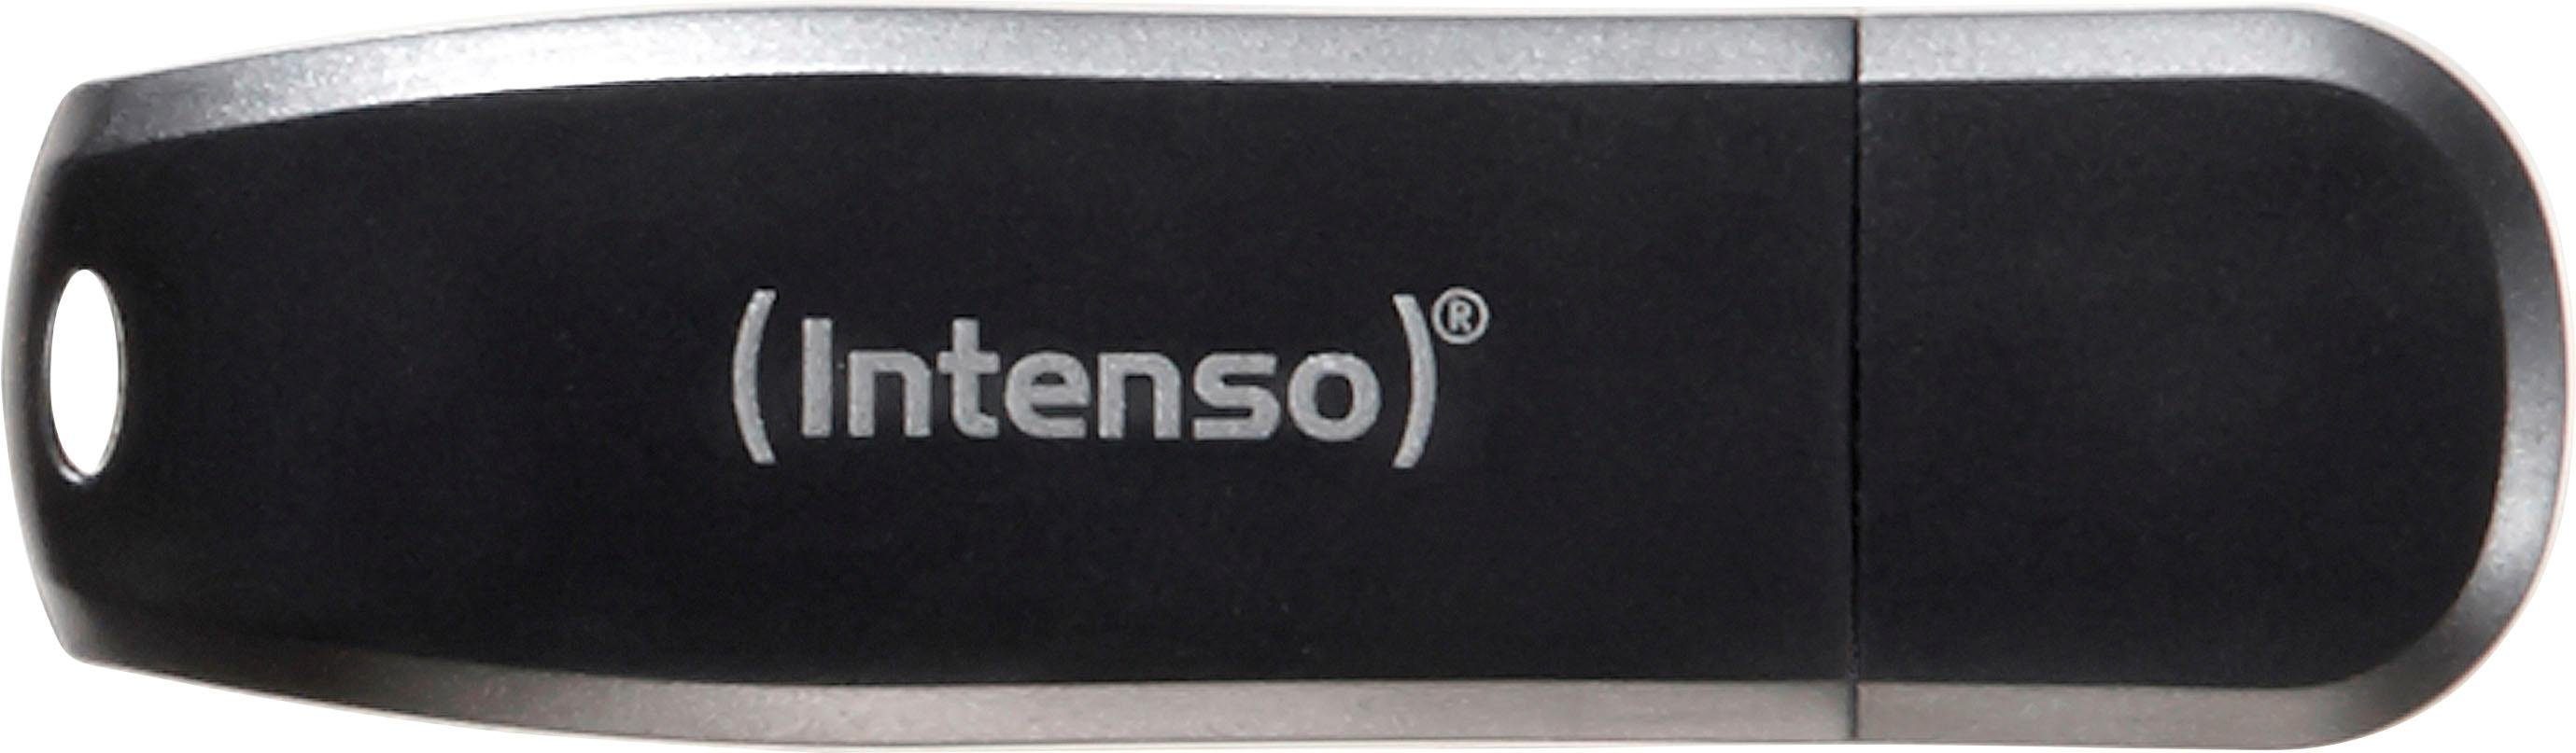 Intenso »Speed Line« USB-Stick (USB 3.0, Lesegeschwindigkeit 35 MB/s)  online kaufen | OTTO